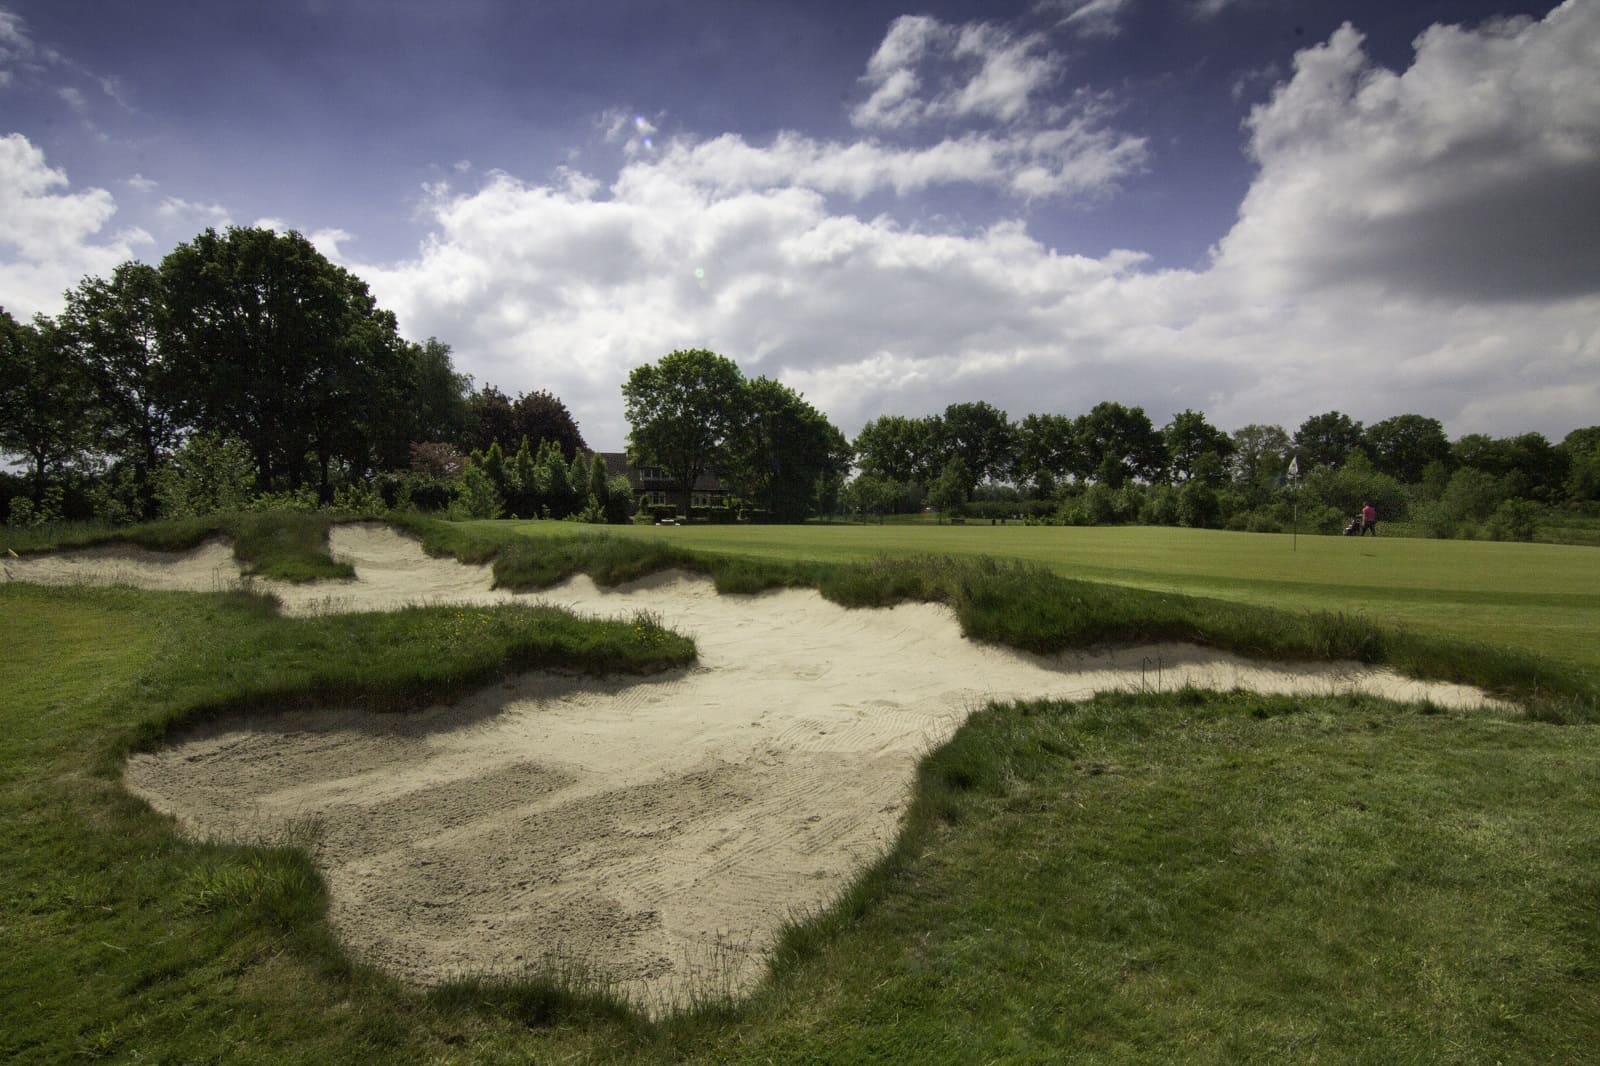 Golfpark turfvaert, parcours 18 trous à Rijsbergen près de Bréda aux Pays-Bas